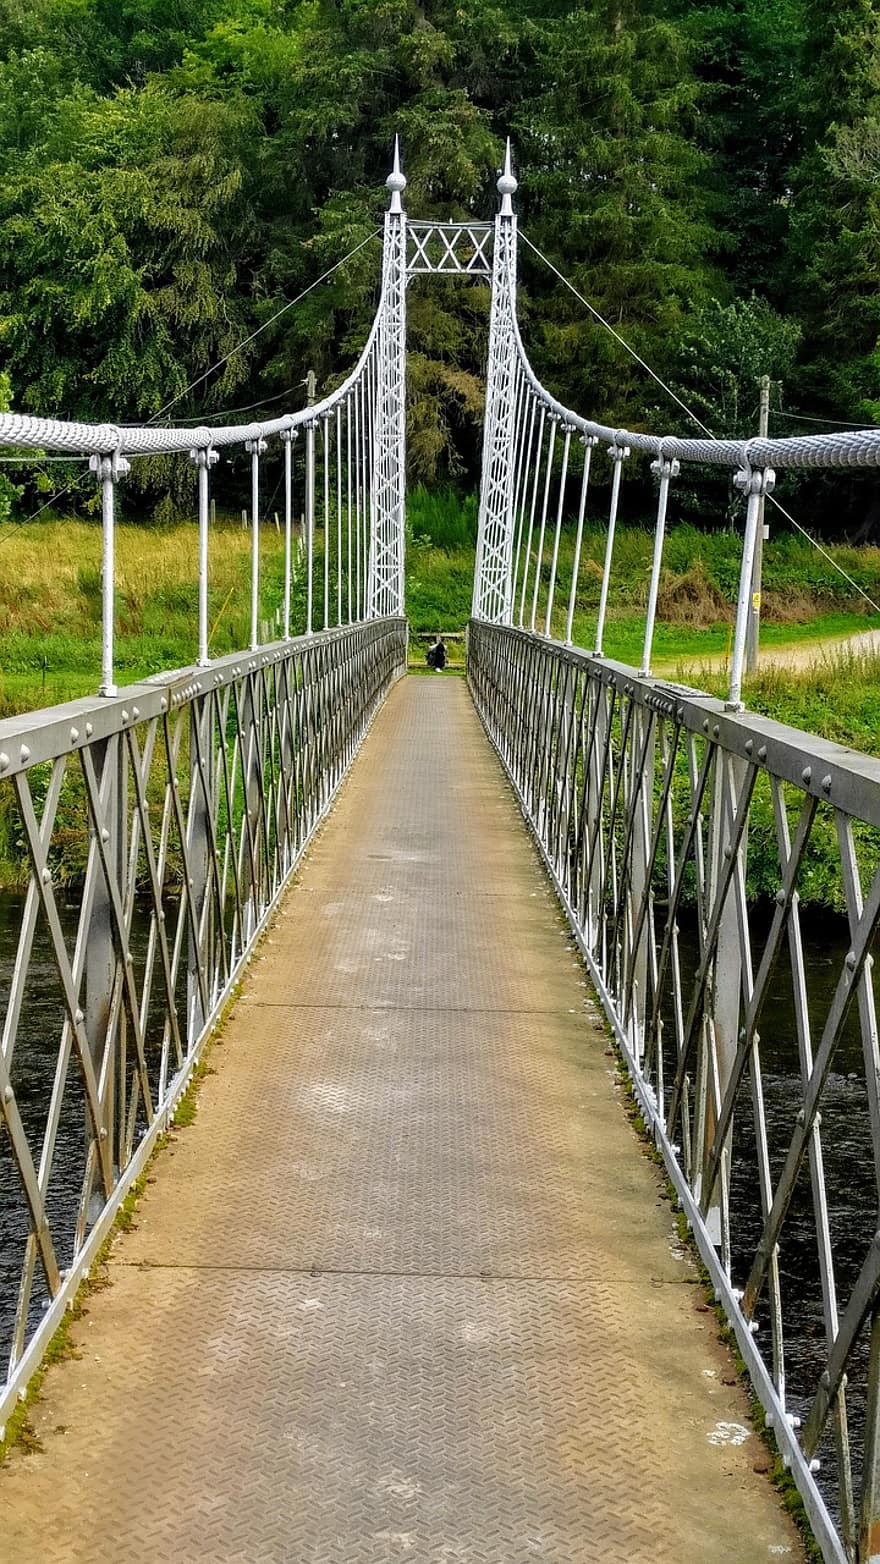 γέφυρα, κρεμαστή γέφυρα, αρχιτεκτονική, μονοπάτι, ξύλο, νερό, δάσος, τοπίο, πεζογέφυρα, πράσινο χρώμα, καλοκαίρι